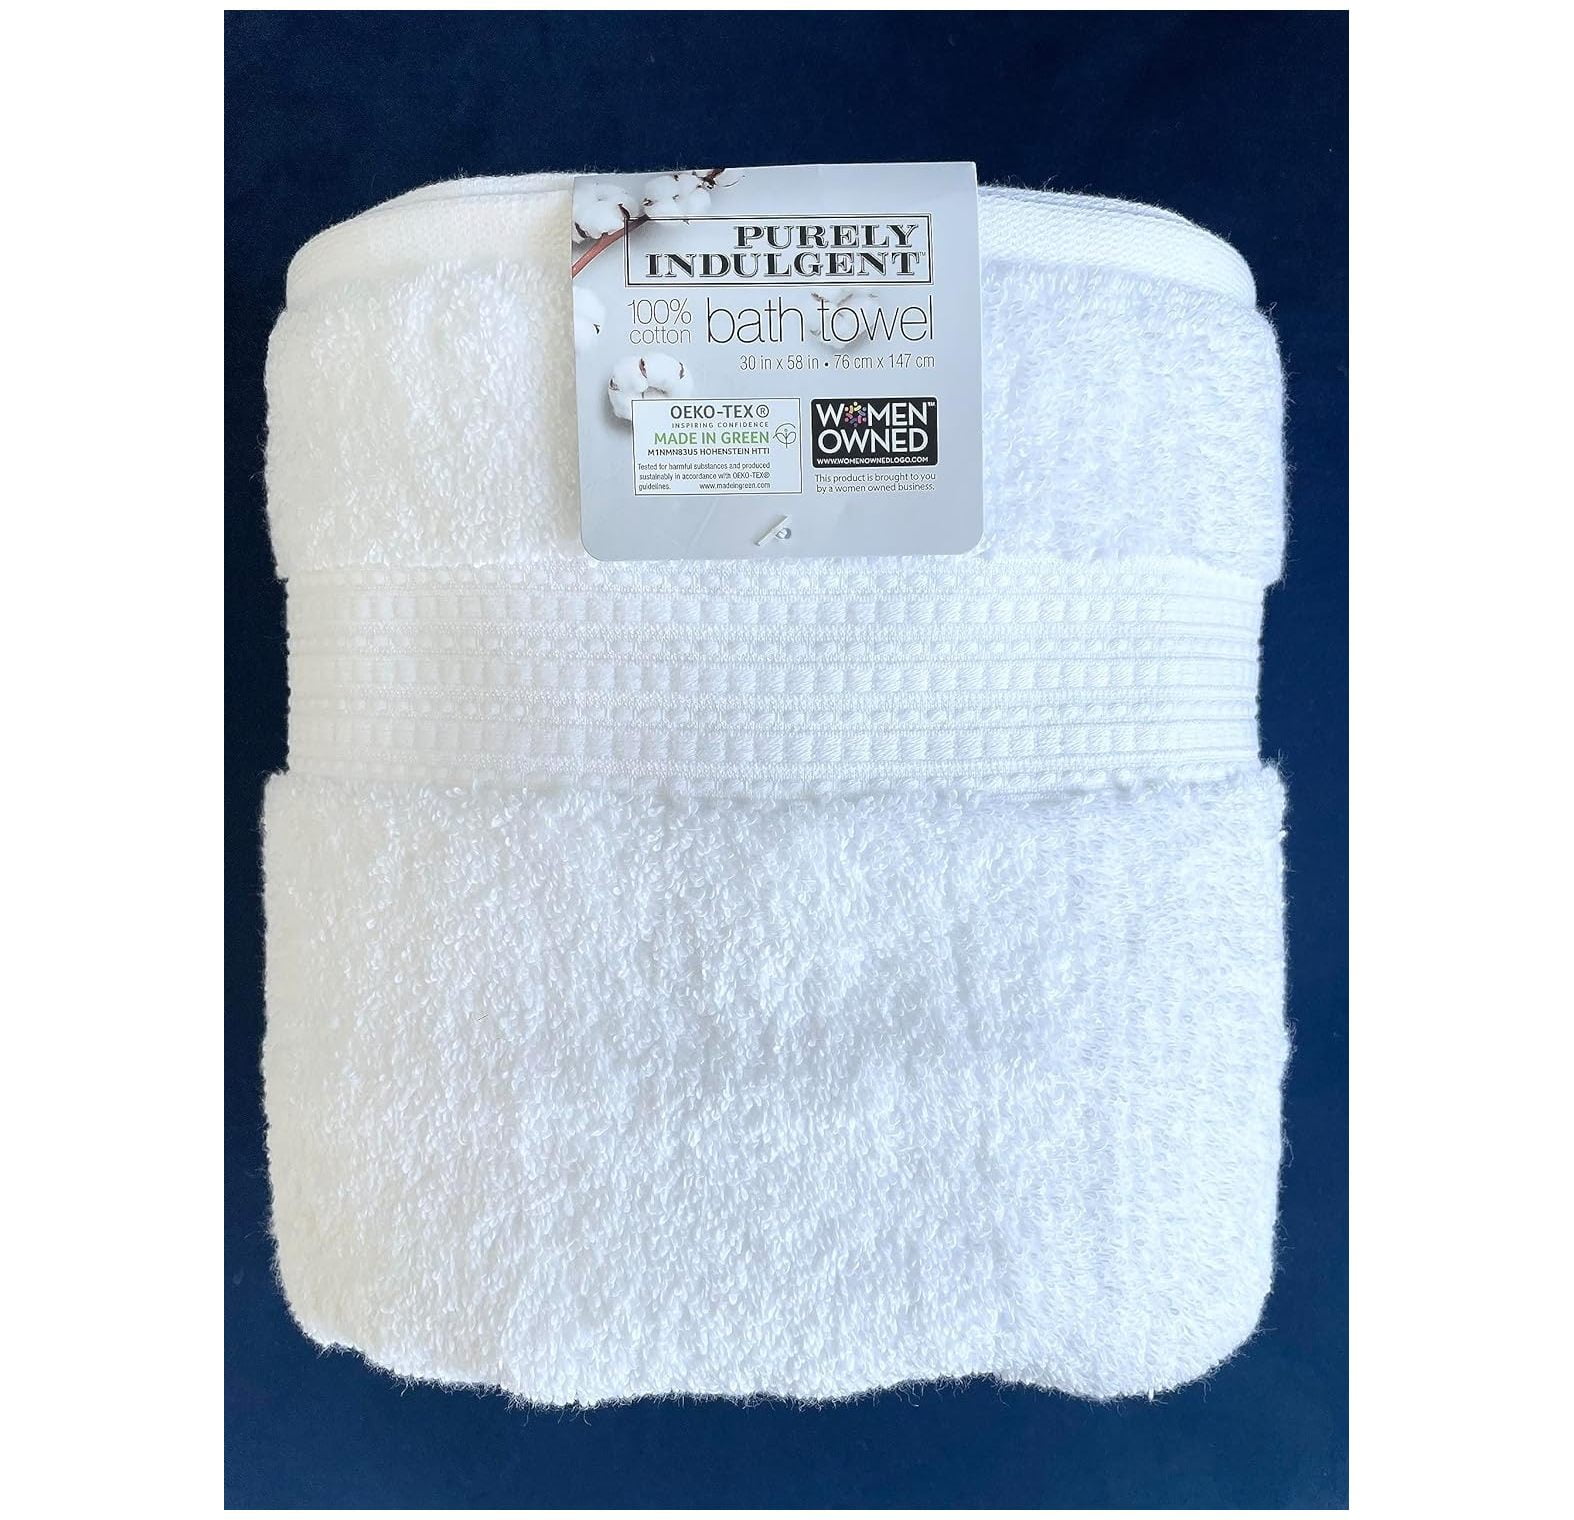 Purely Indulgent bath towel 30”X58” White Oeko-Tex Made In Green NWT